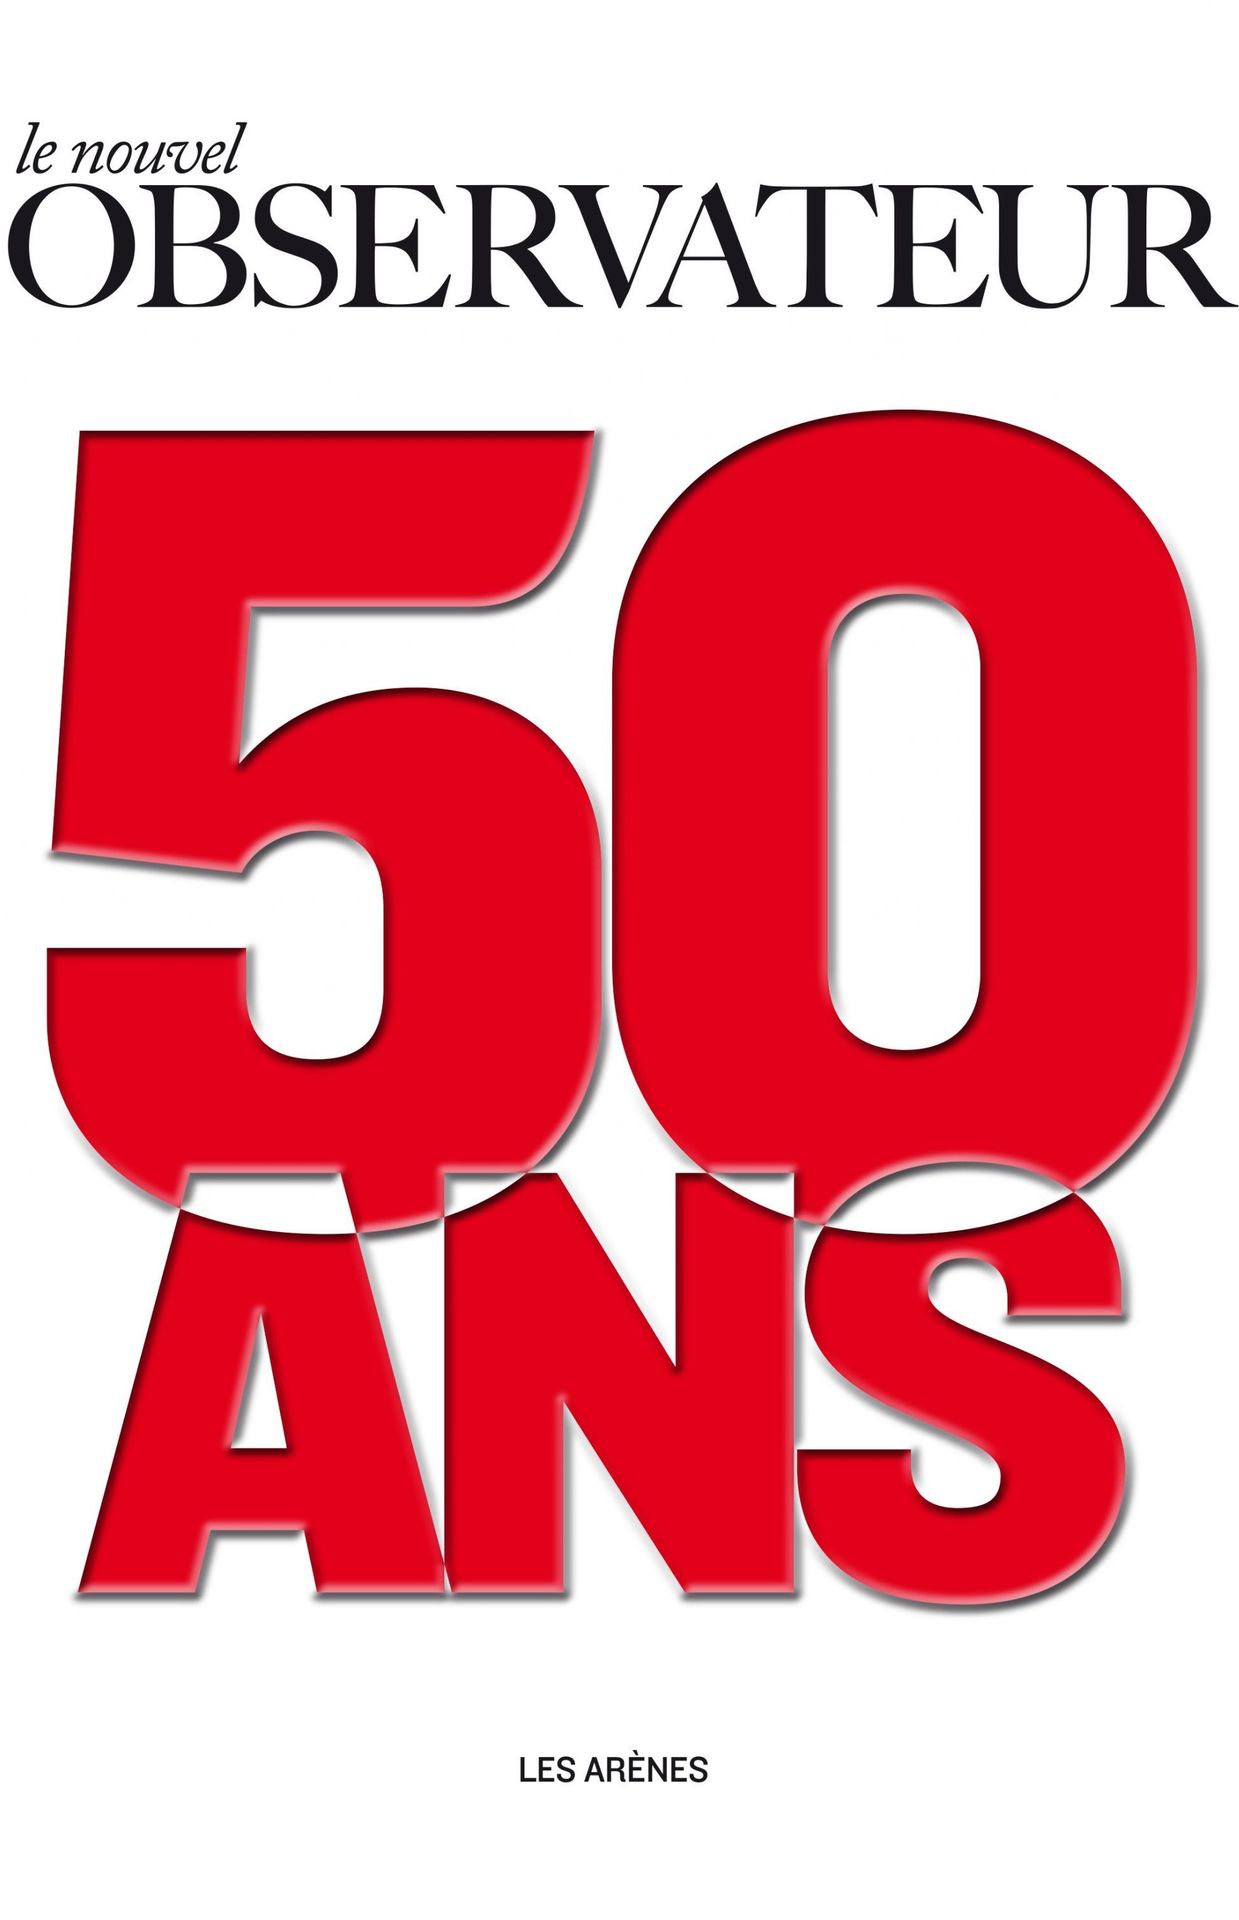 "Le Nouvel Observateur, 50 ans"